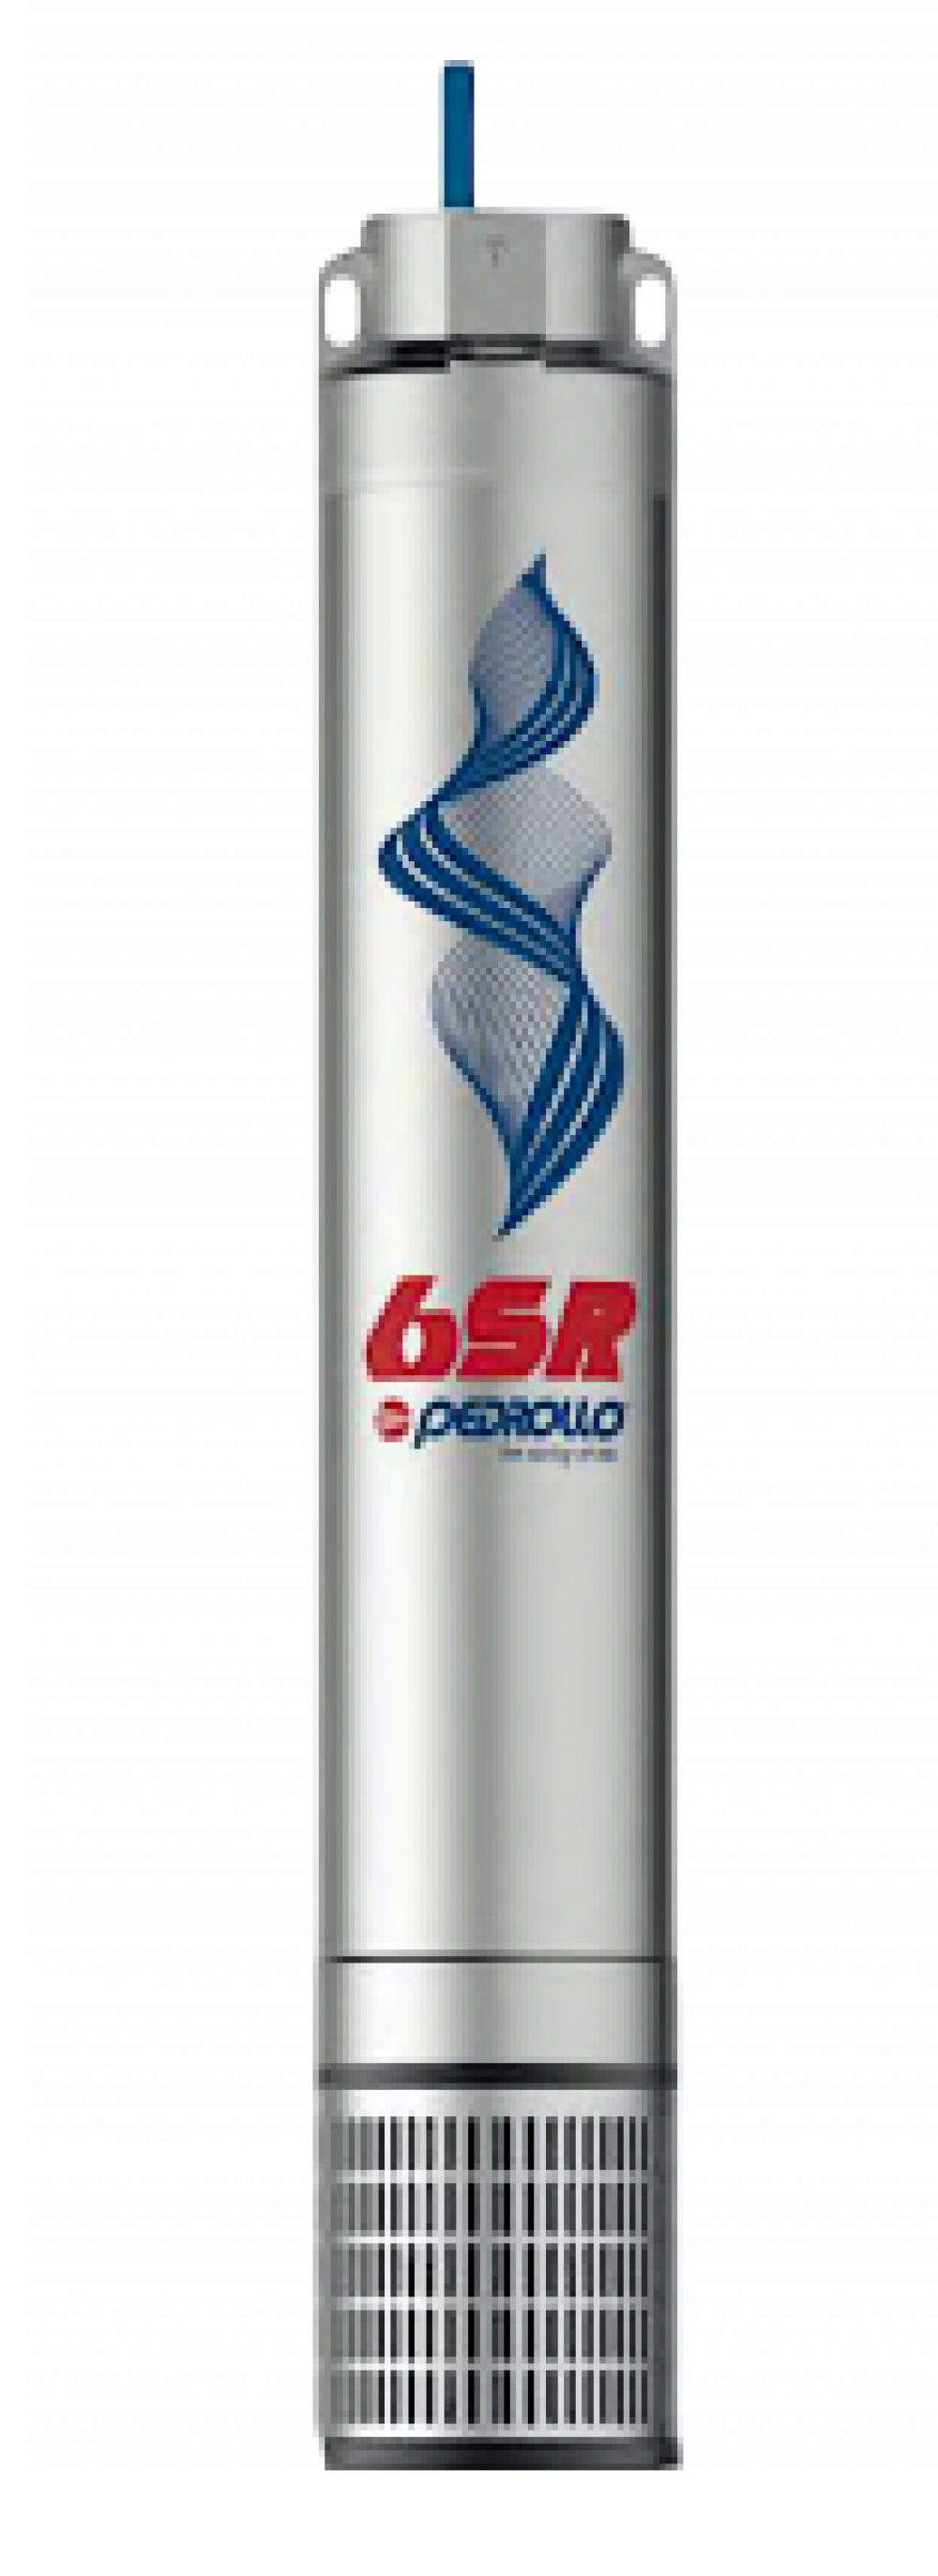 Гидравлическая часть насоса Pedrollo 6SR 45614 Ду80 центробежного, производительность 18 м3/час, напор 149 м, мощность 9.2 кВт, напряжение трехфазной сети 380В